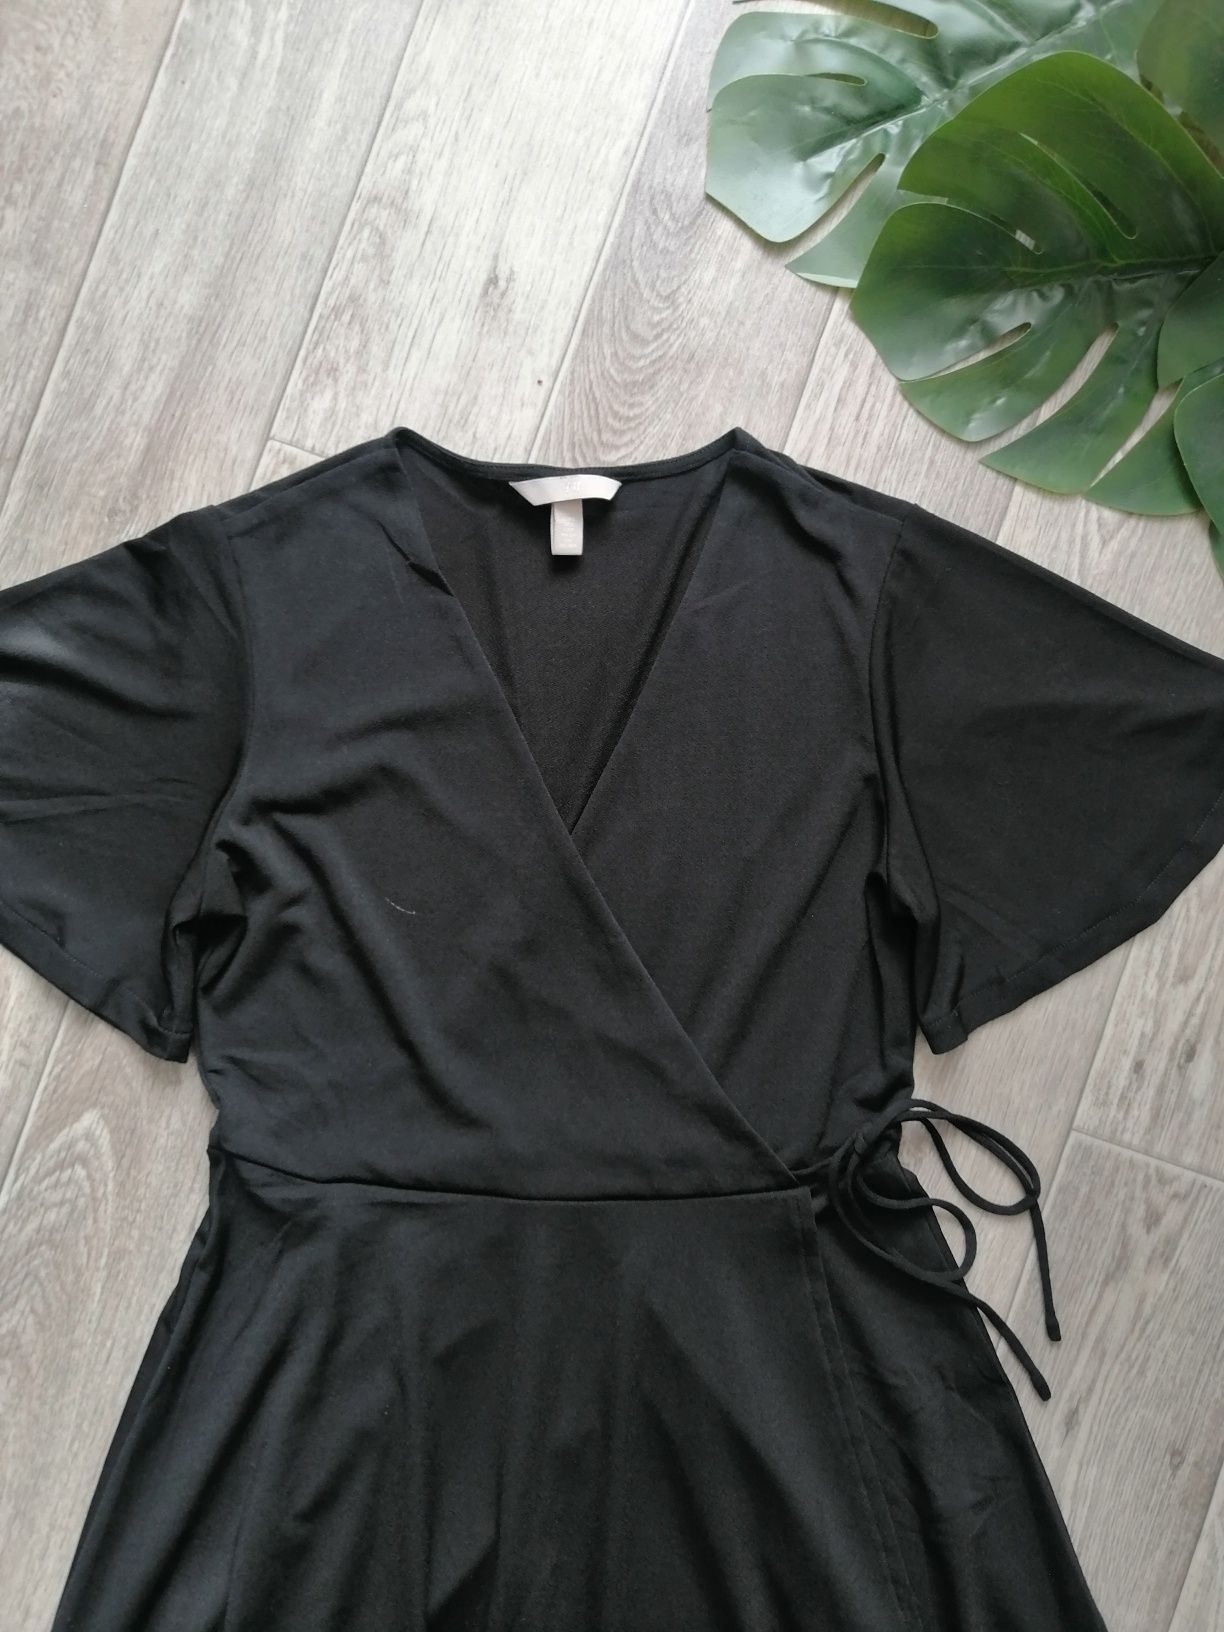 Платье h&m чёрное s, 42-44